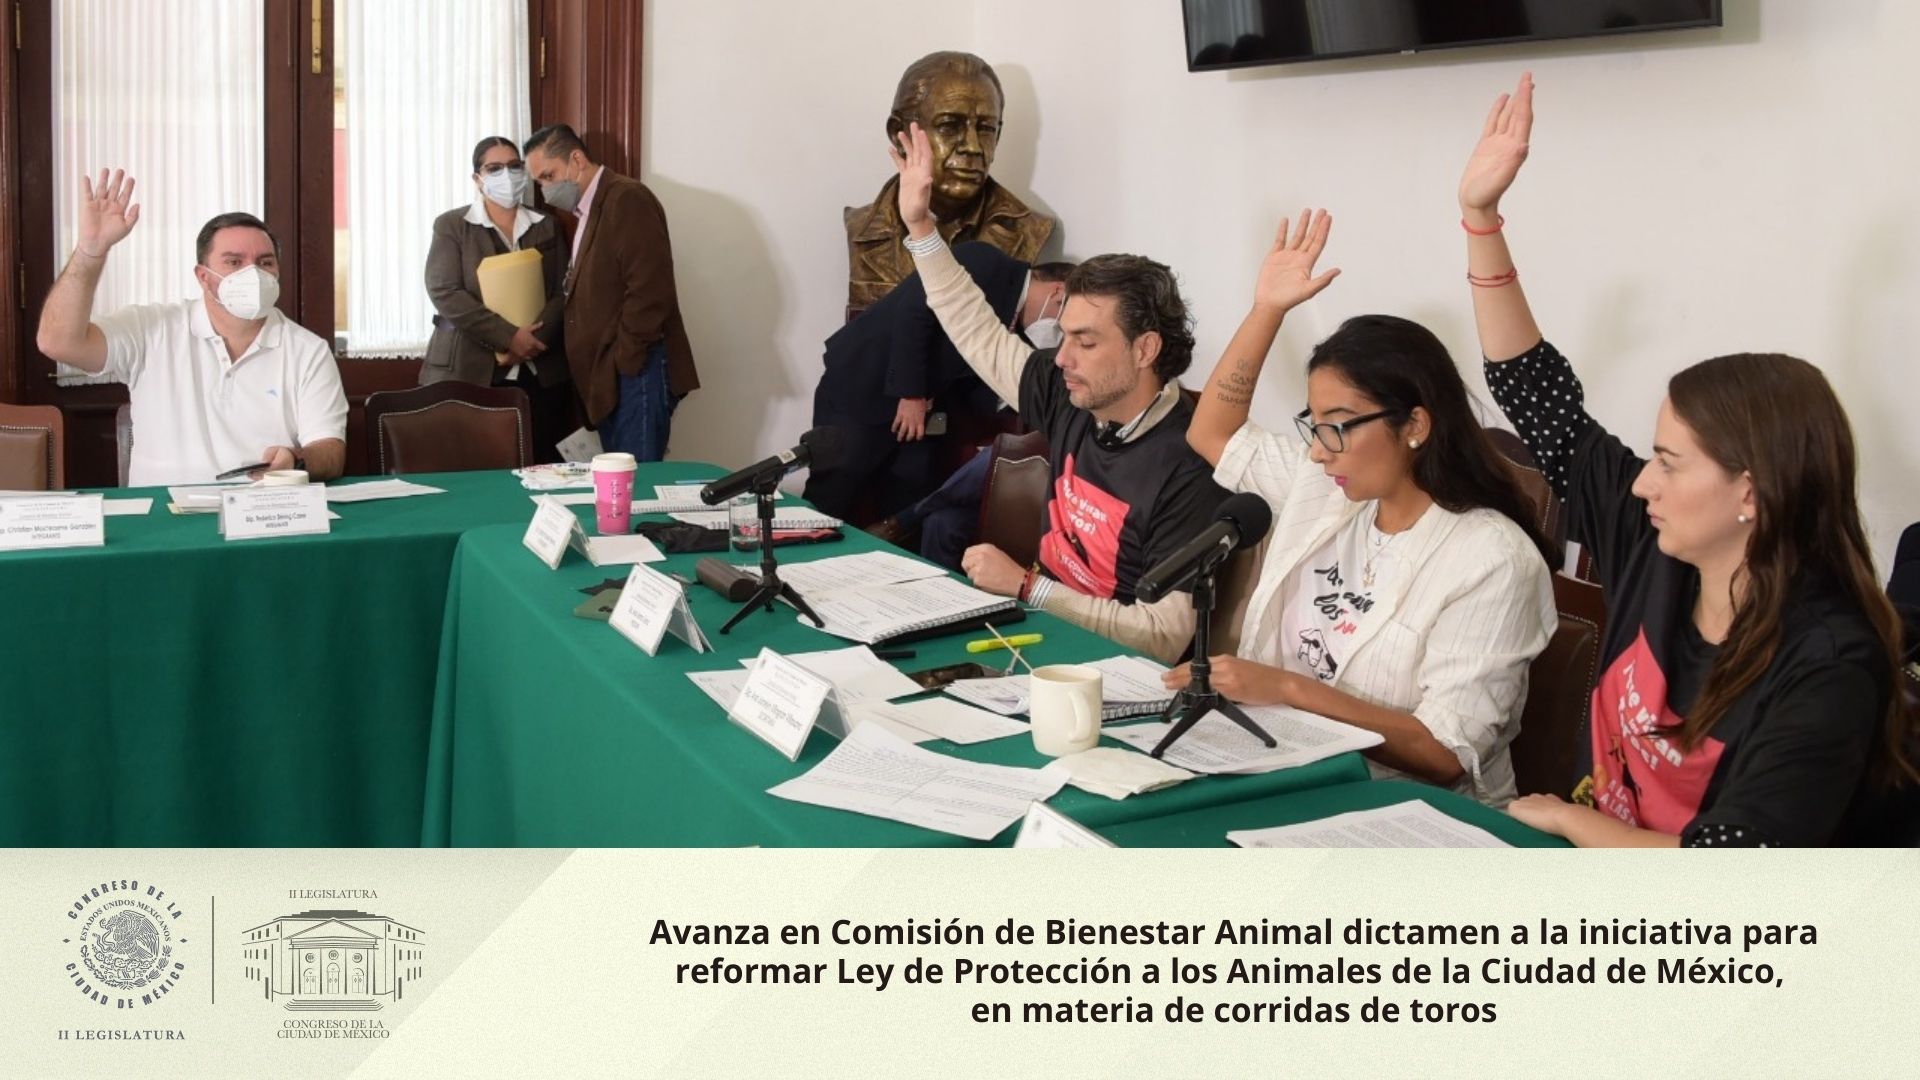 Avanza en Comisión de Bienestar Animal dictamen a la iniciativa para reformar Ley de Protección a los Animales de la Ciudad de México, en materia de corridas de toros